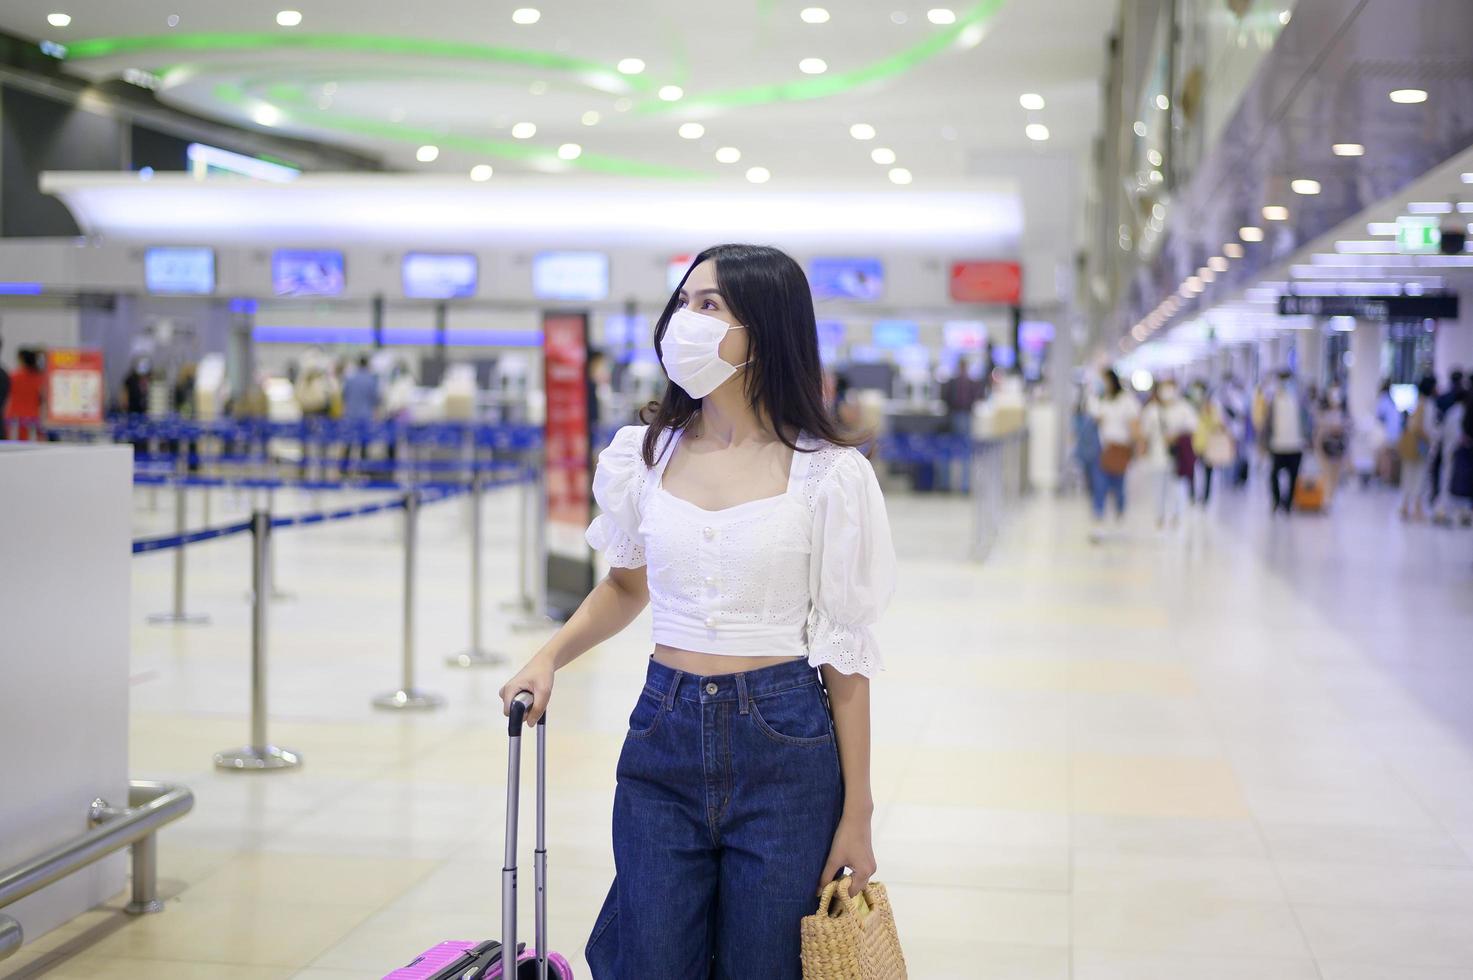 Eine reisende Frau trägt eine Schutzmaske auf dem internationalen Flughafen, reist unter der Covid-19-Pandemie, Sicherheitsreisen, Protokoll zur sozialen Distanzierung, neues normales Reisekonzept foto